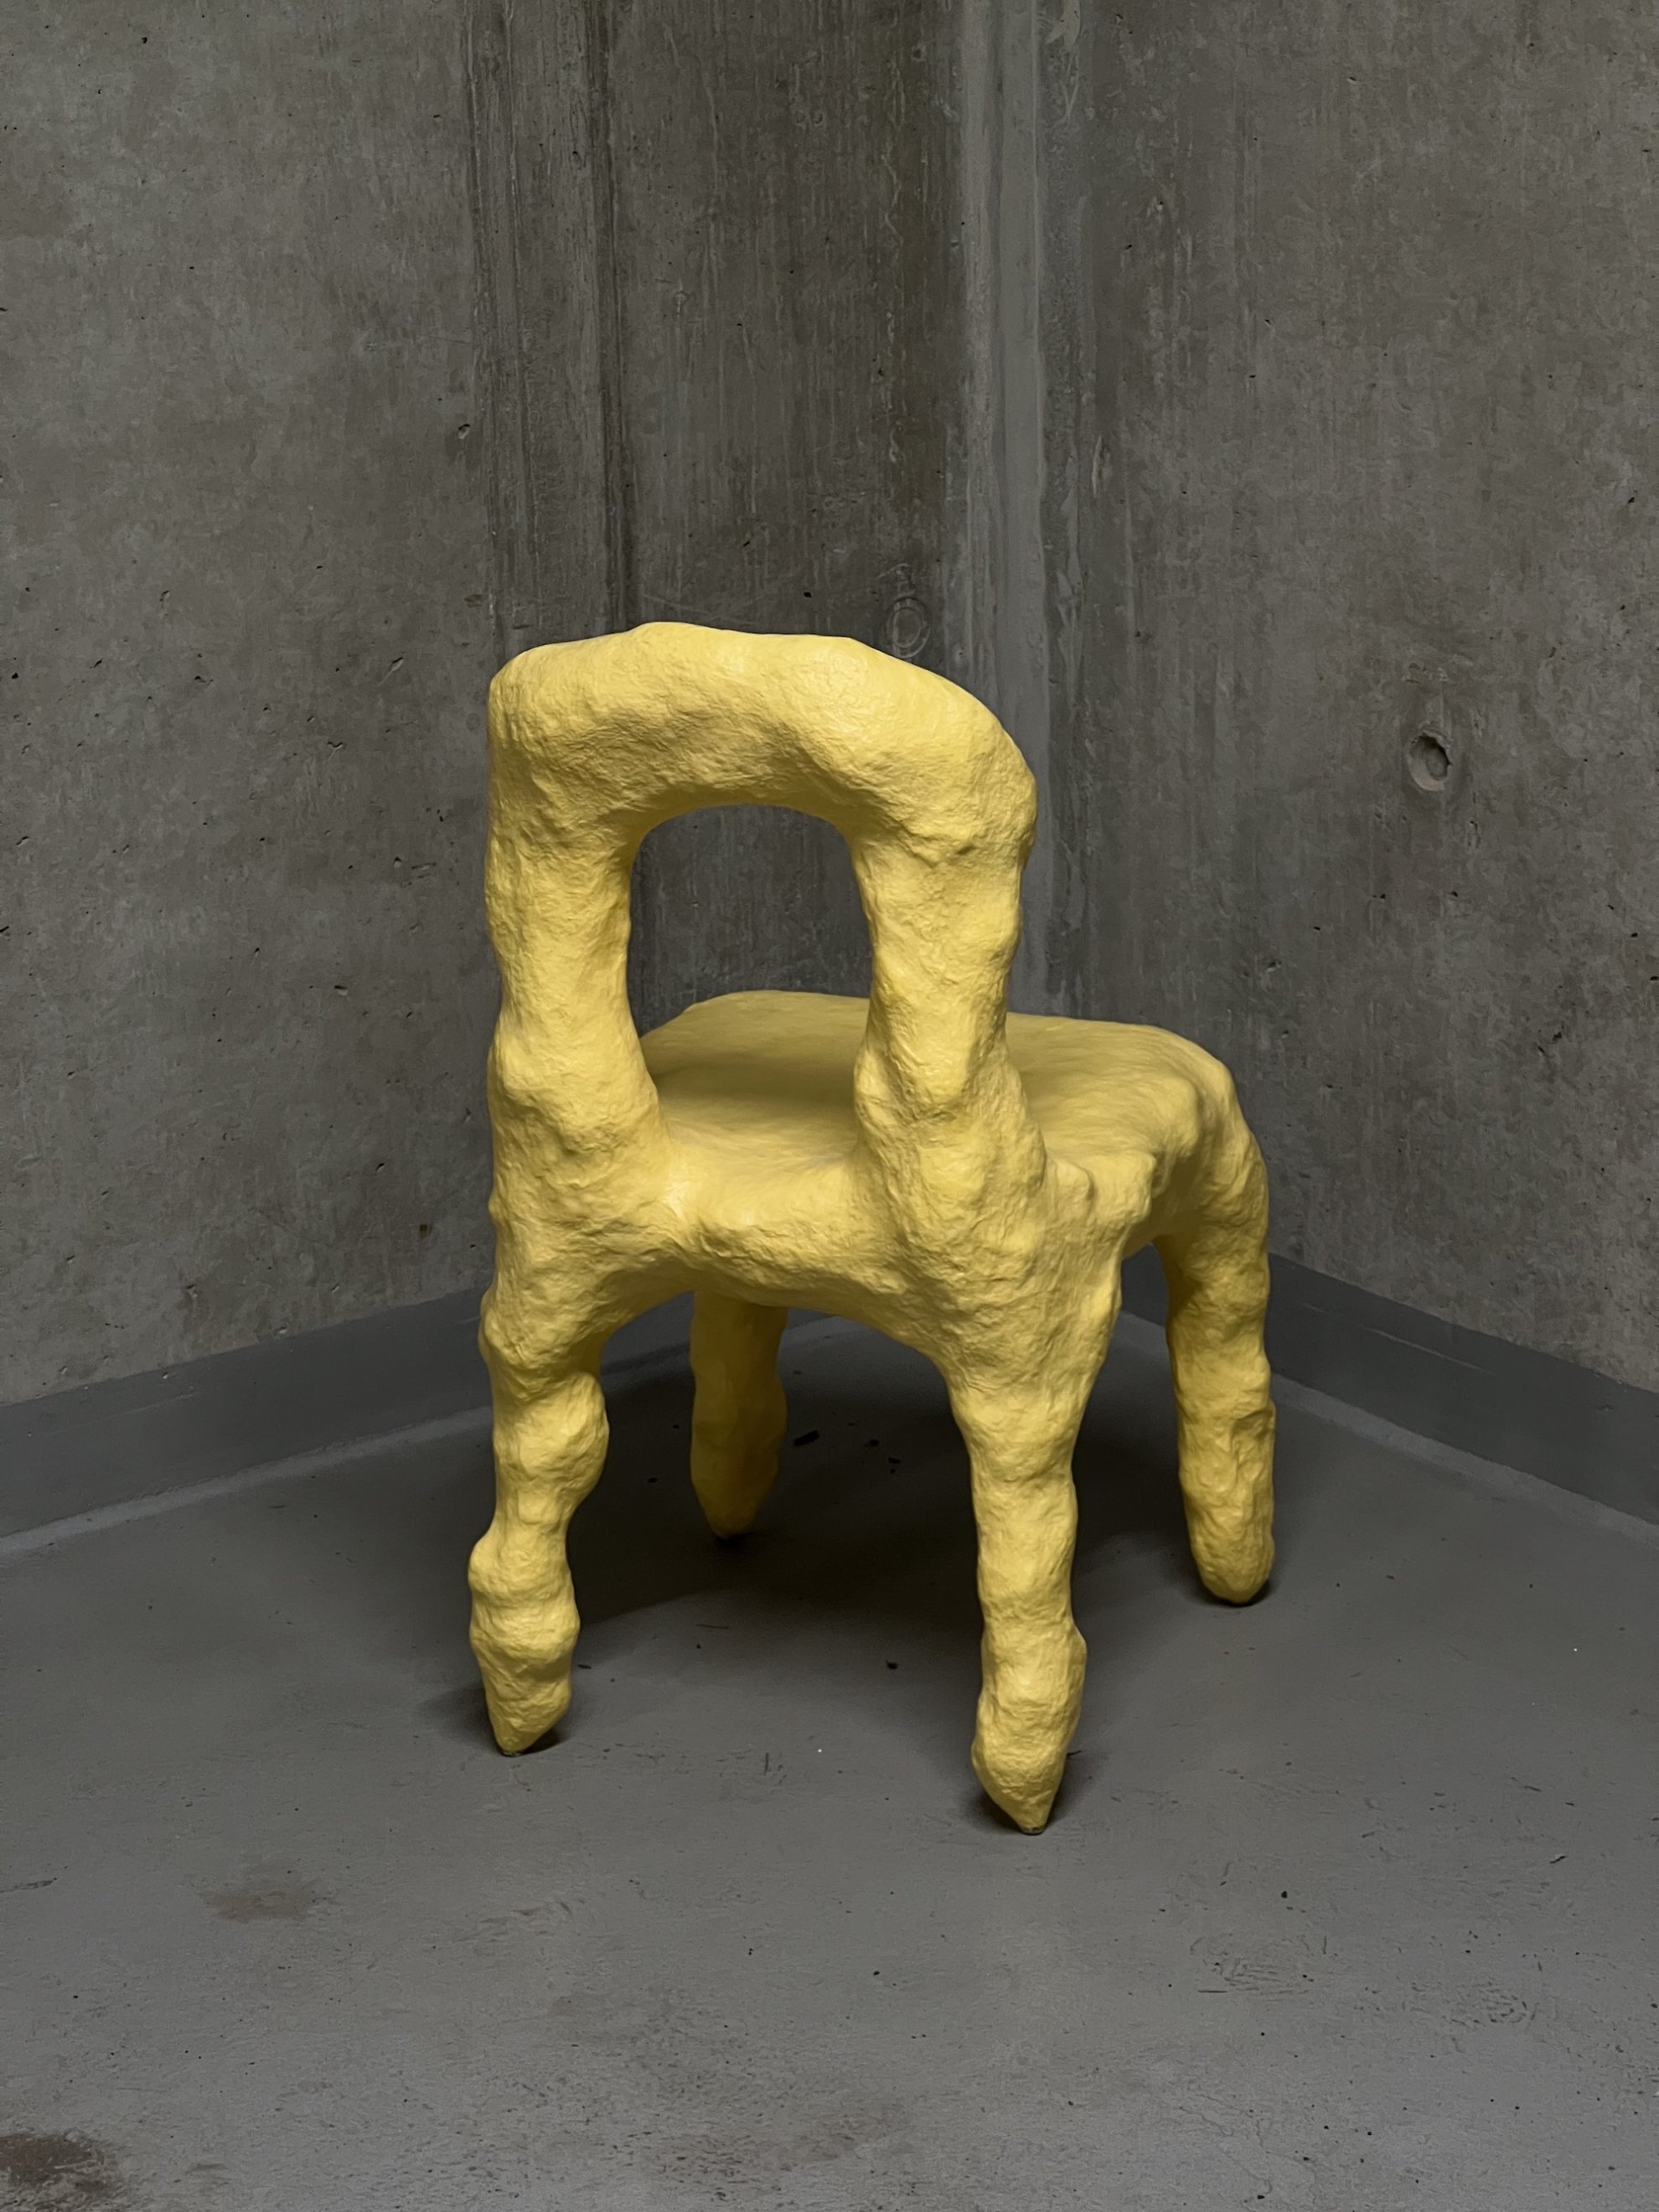 Žlutá židle s hrboly